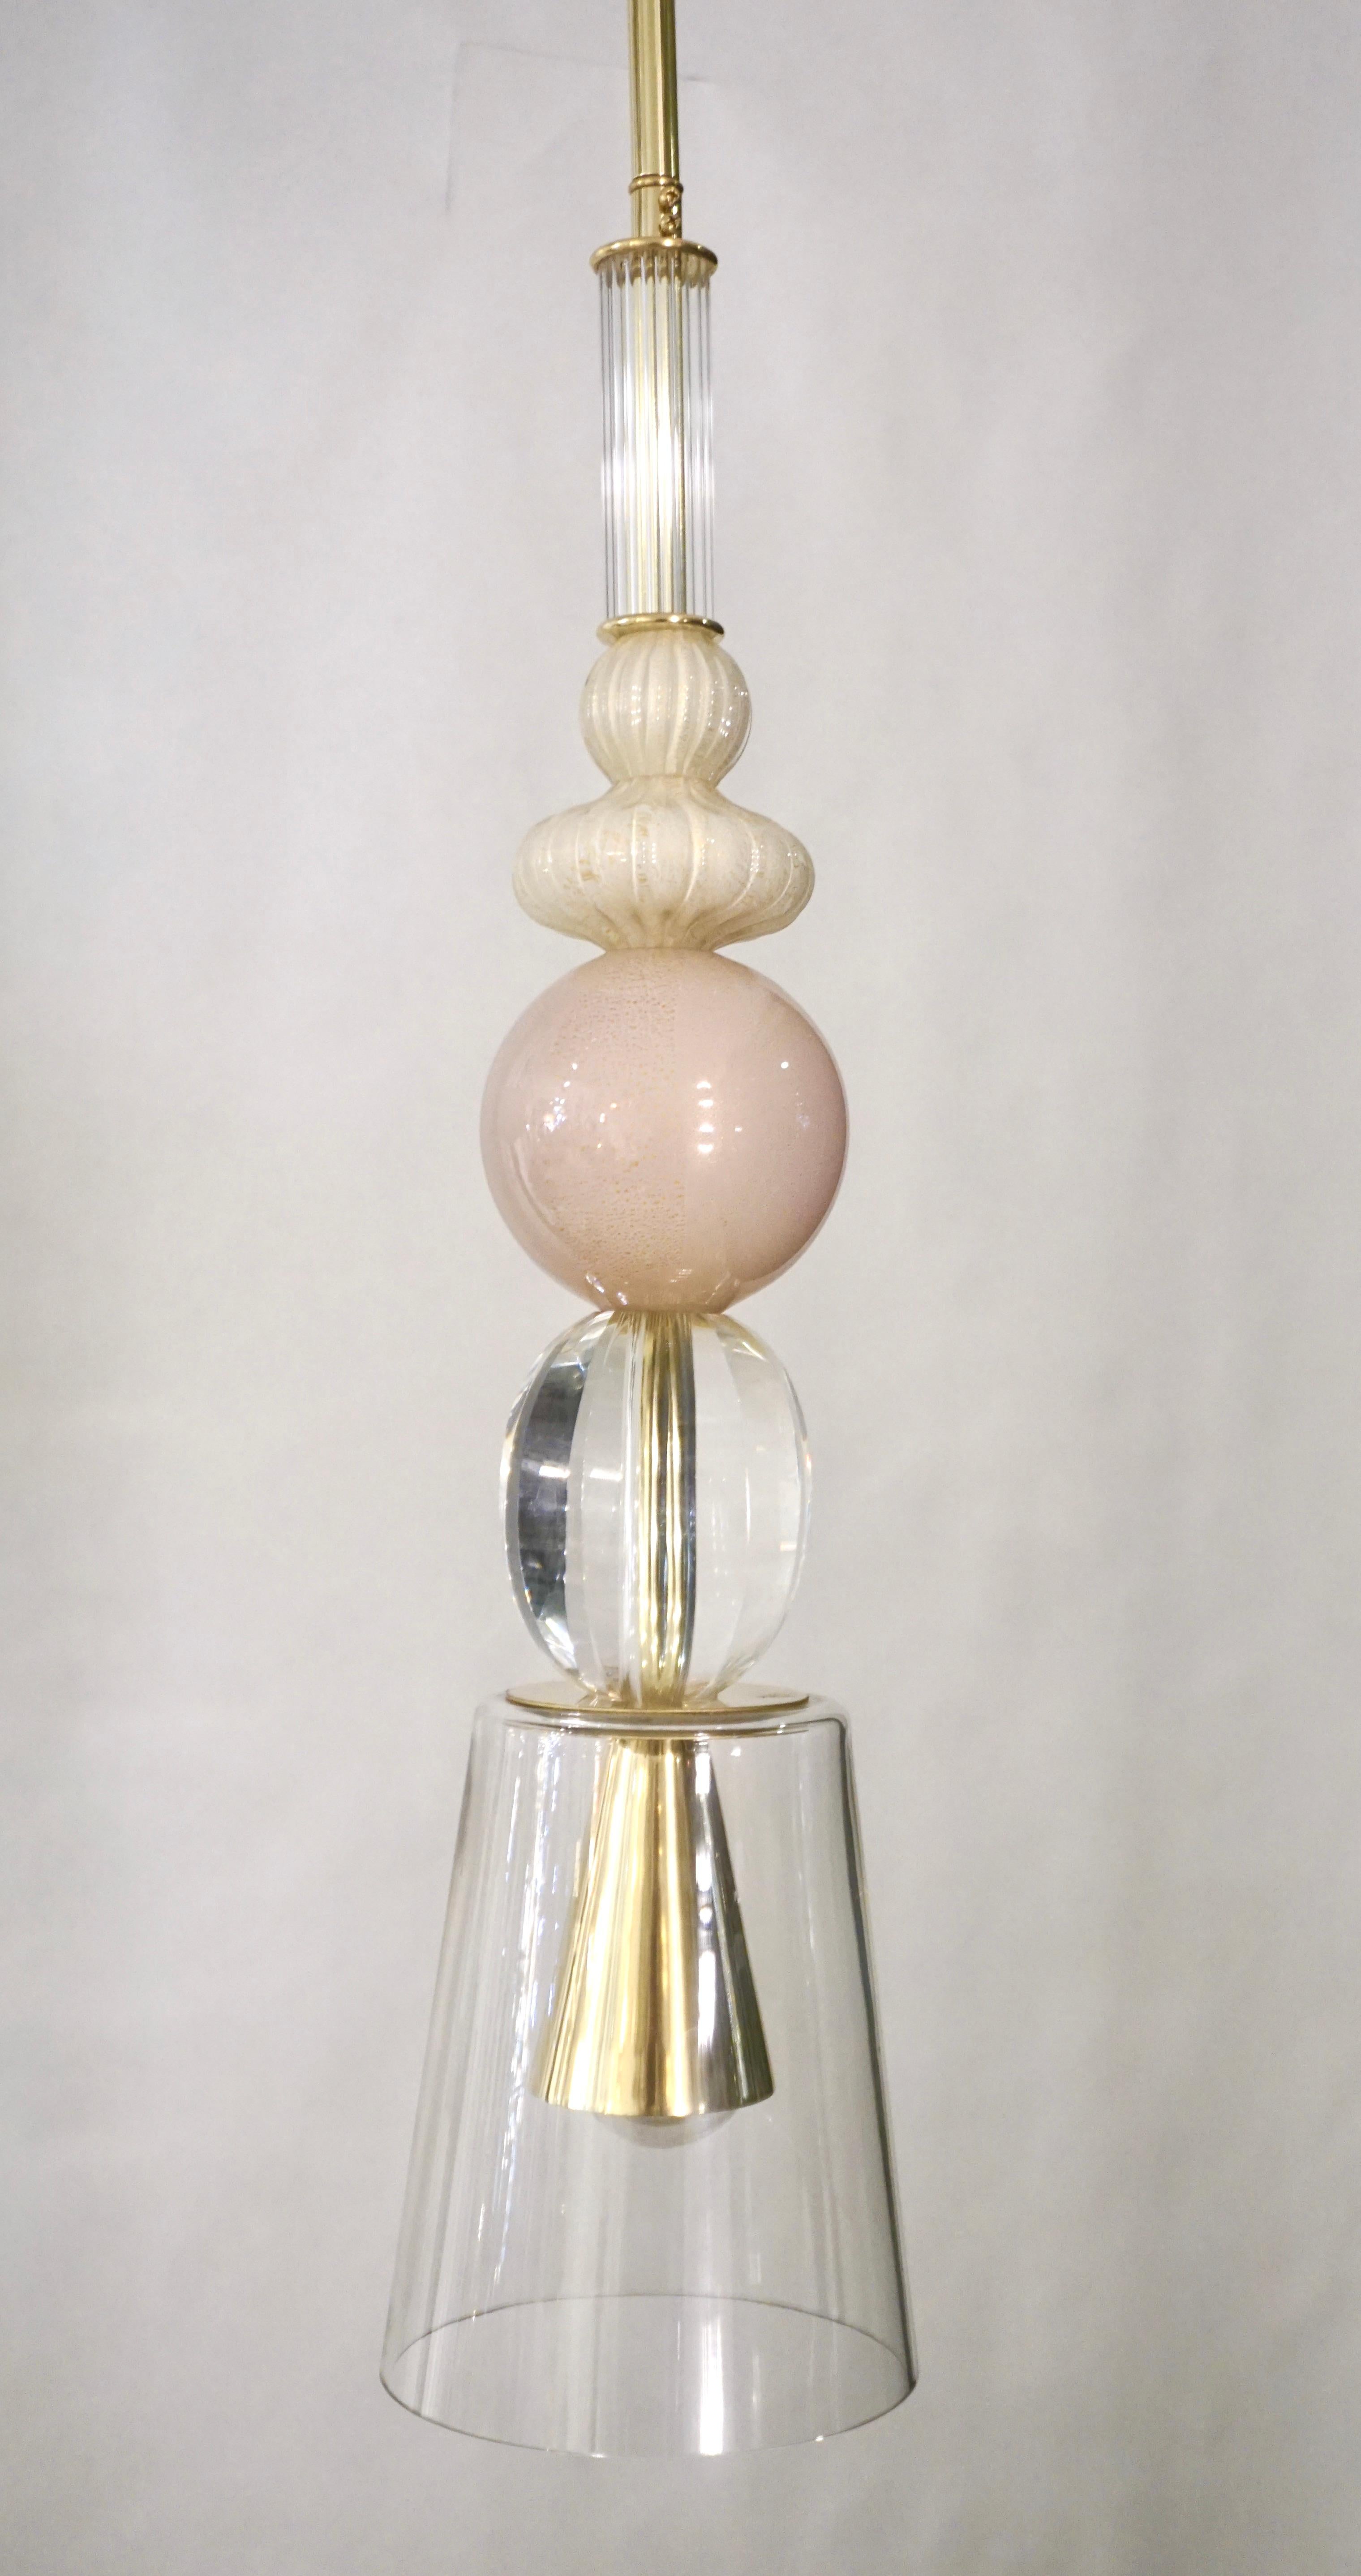 L'amusant et élégant lustre à lanterne italien, entièrement fabriqué à la main, de conception organique moderne, composé d'une succession d'éléments : un cylindre en verre de Murano en forme de roseau, des sphères en verre crème opalin superposées